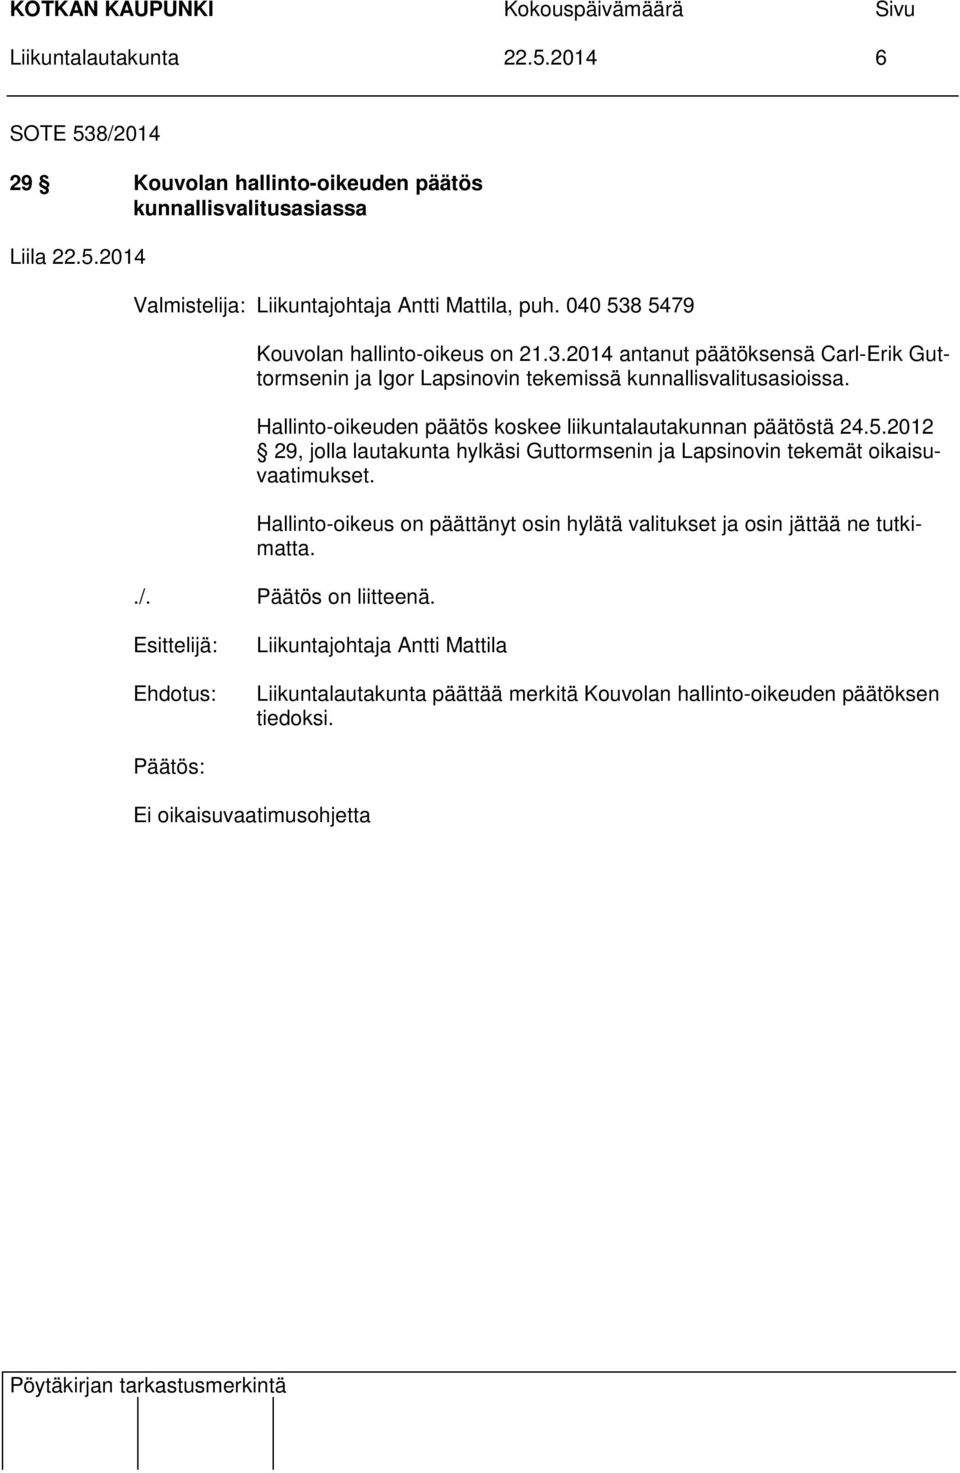 Hallinto-oikeuden päätös koskee liikuntalautakunnan päätöstä 24.5.2012 29, jolla lautakunta hylkäsi Guttormsenin ja Lapsinovin tekemät oikaisuvaatimukset.